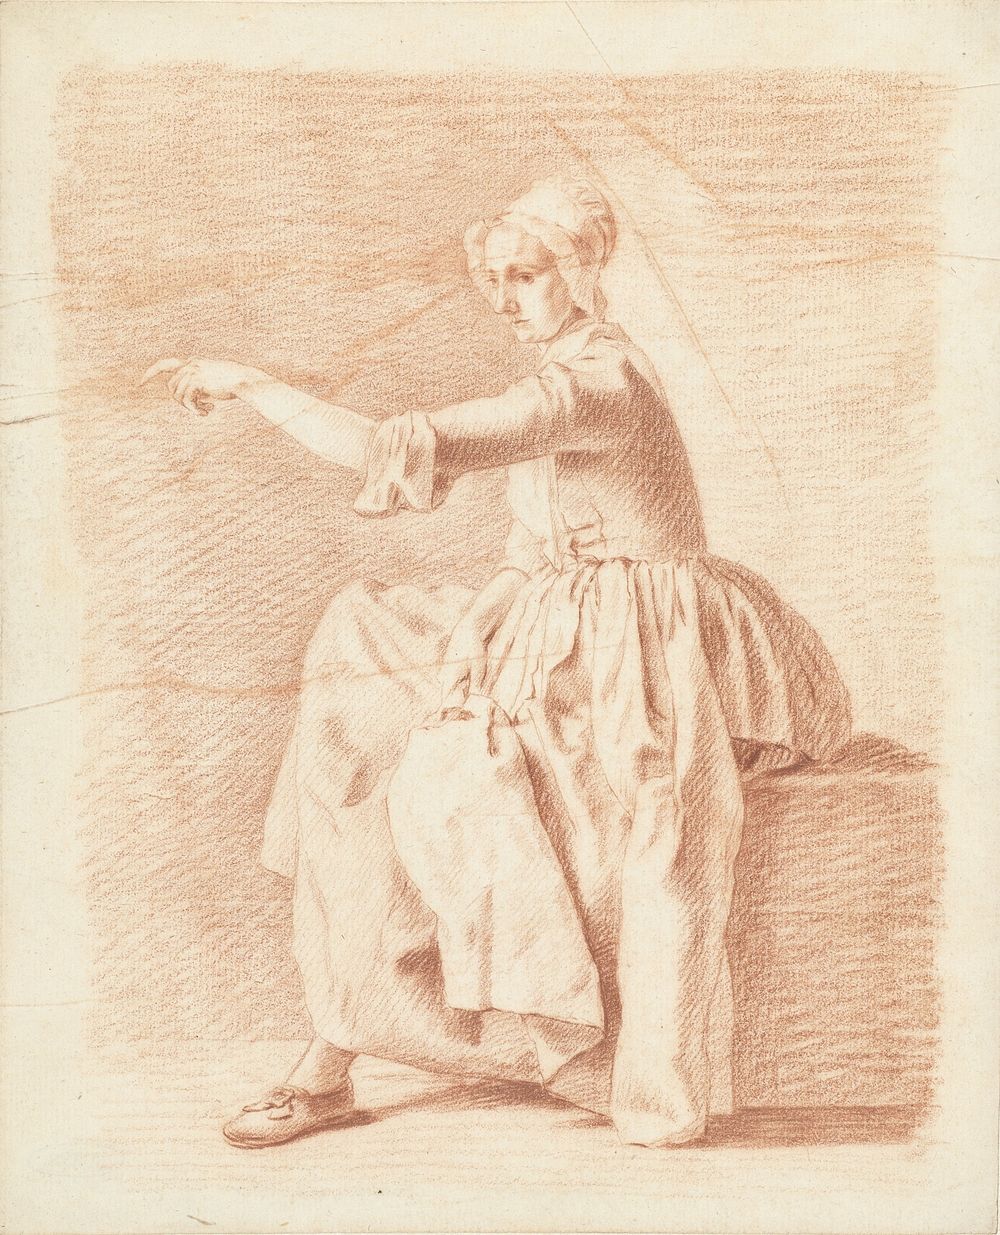 Zittende vrouw op een kist, wijzend naar links (1700 - 1800) by anonymous and Tibout Regters